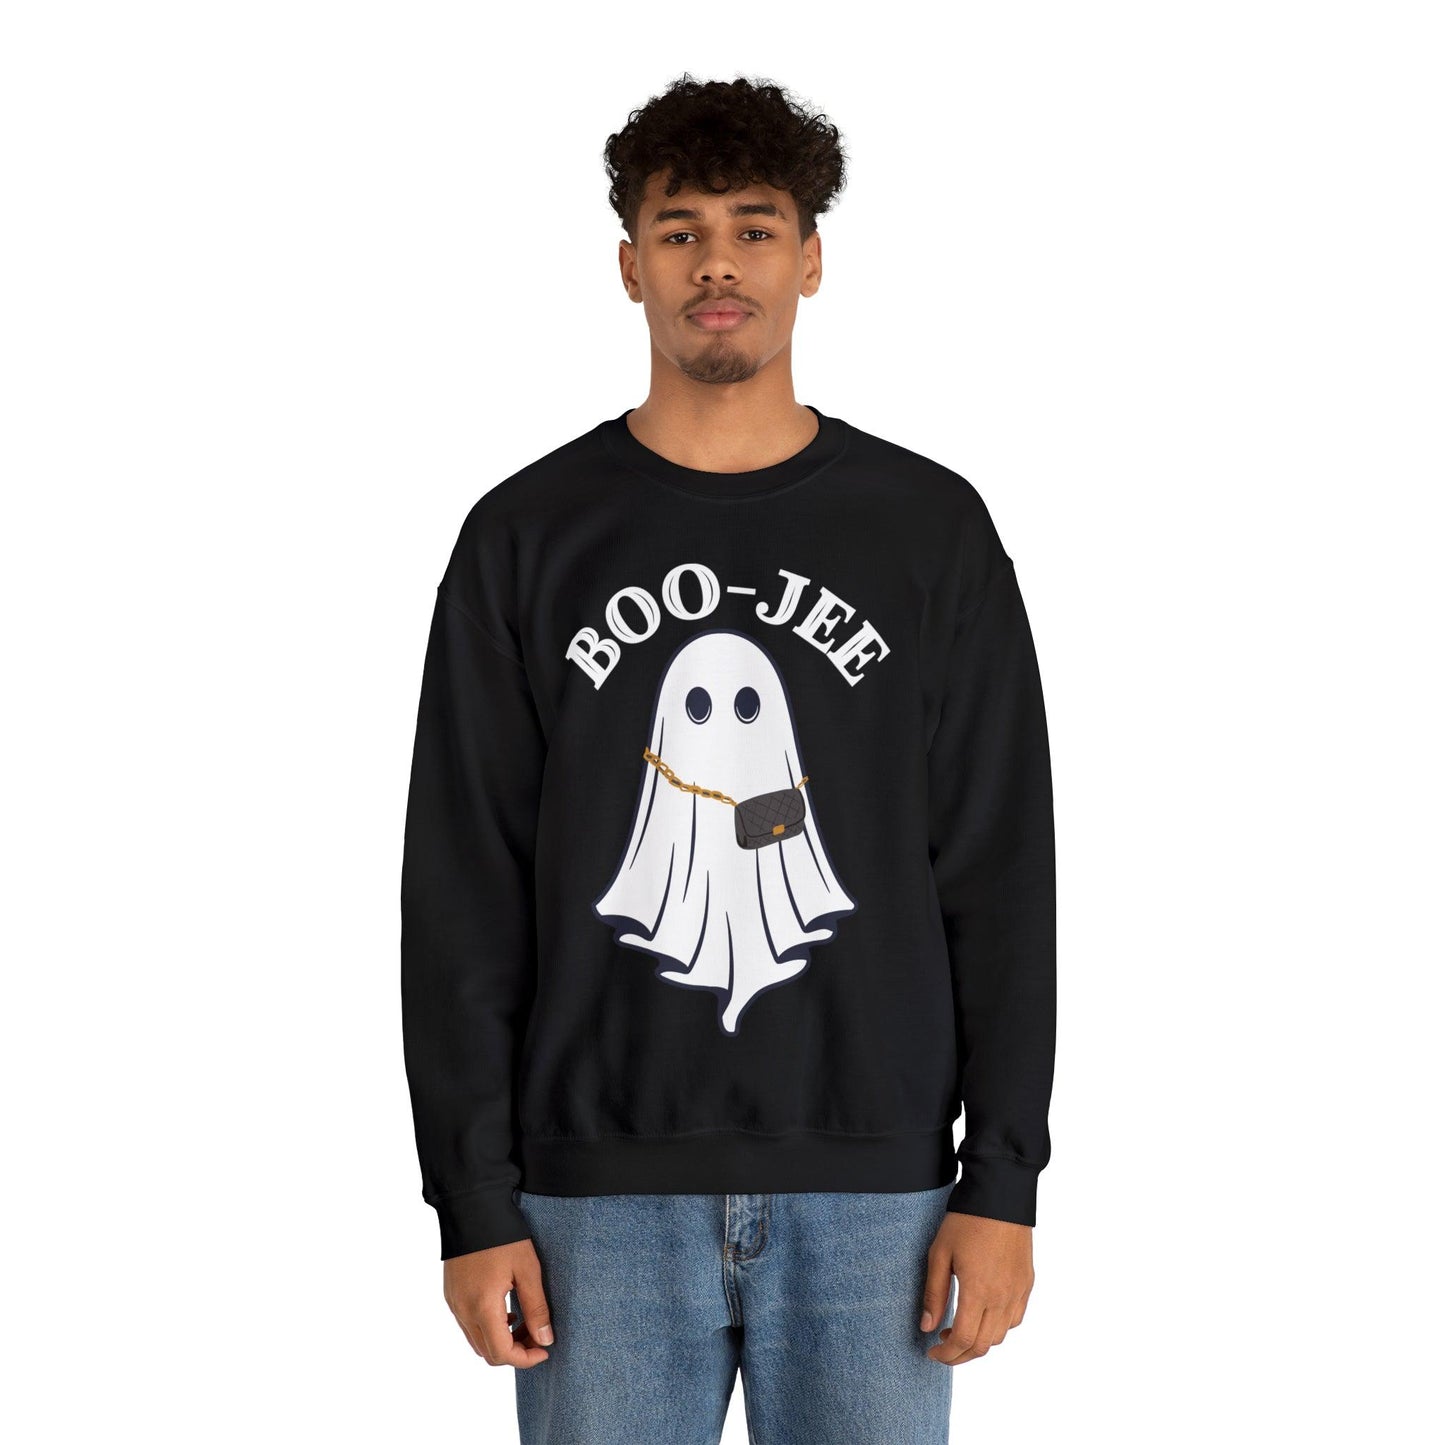 Boo Jee Spooky Ghost Sweatshirt